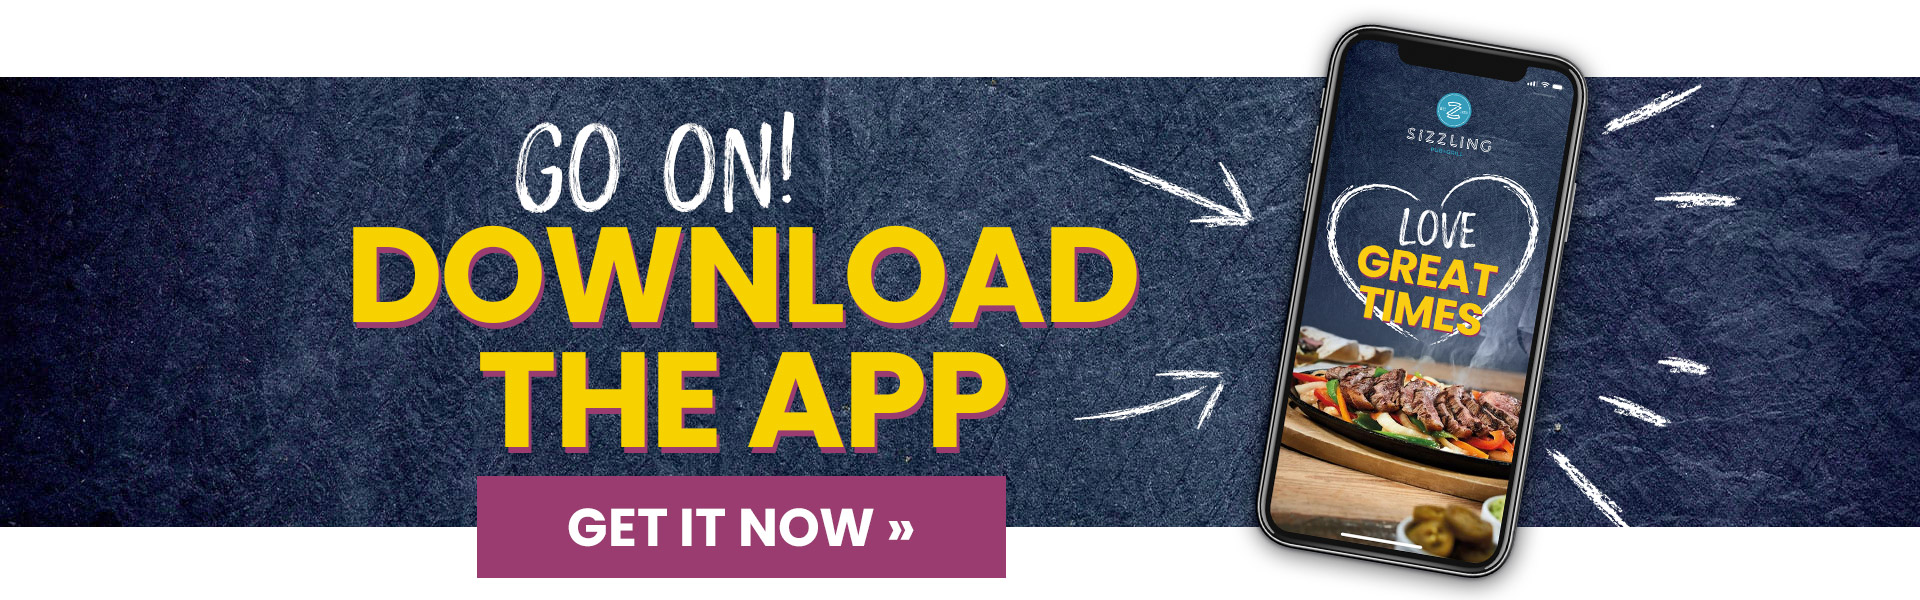 Download the App at Acorn